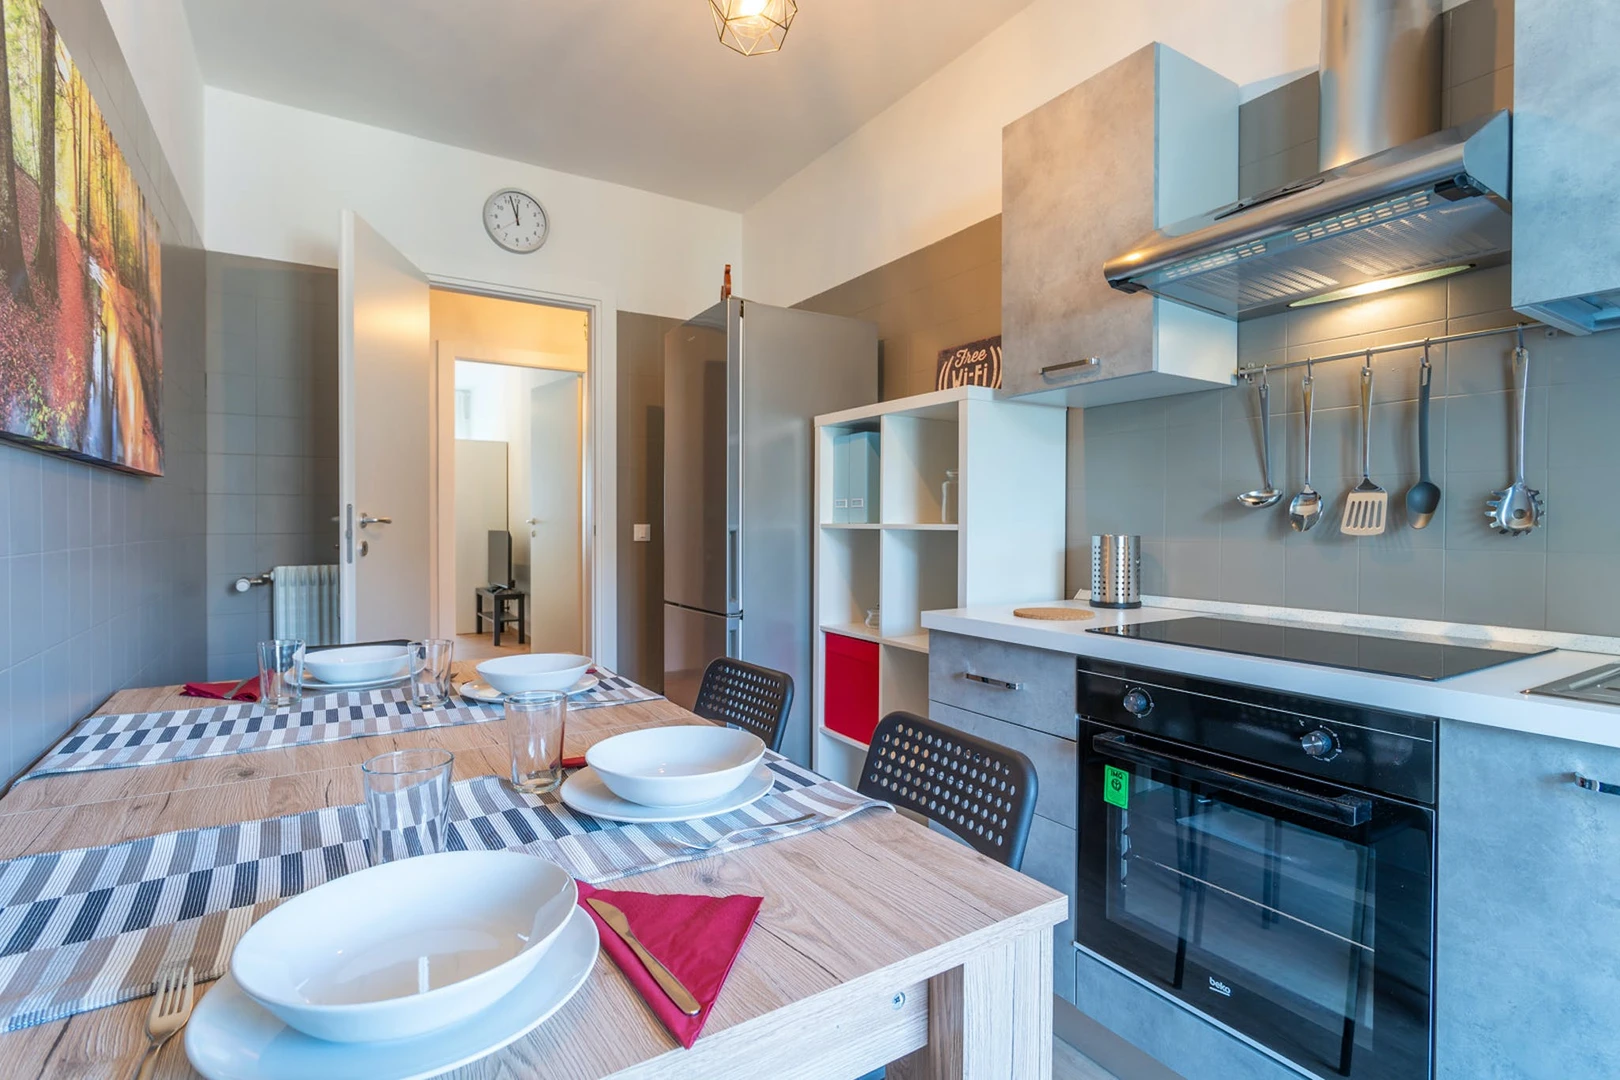 Alquiler de habitaciones por meses en Udine